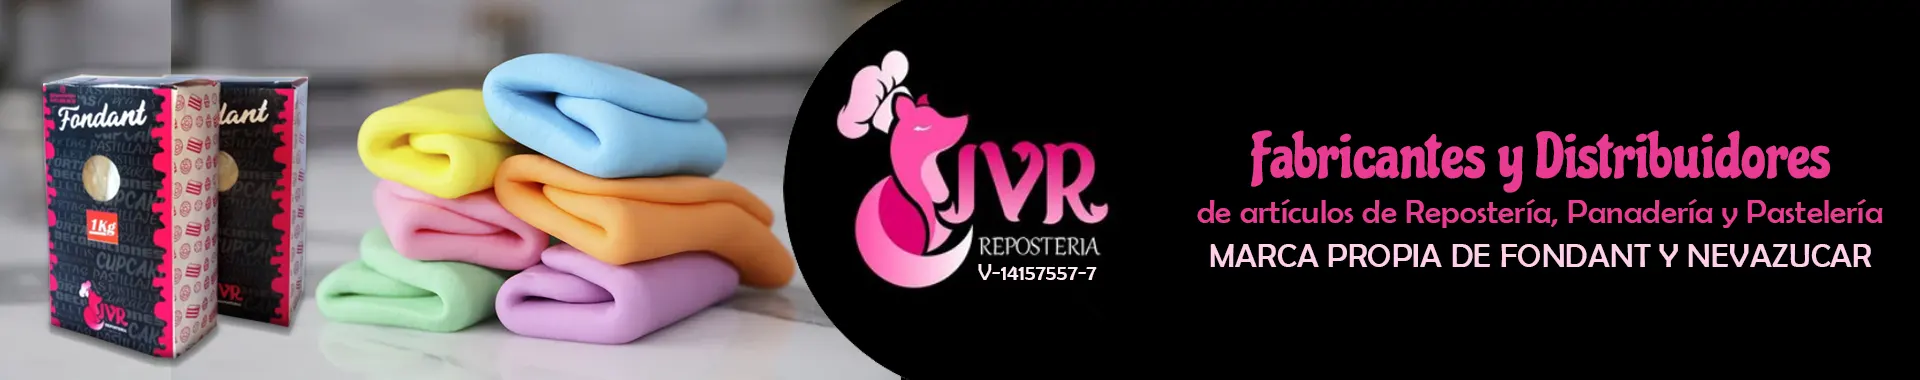 Imagen 1 del perfil de JVR Repostería